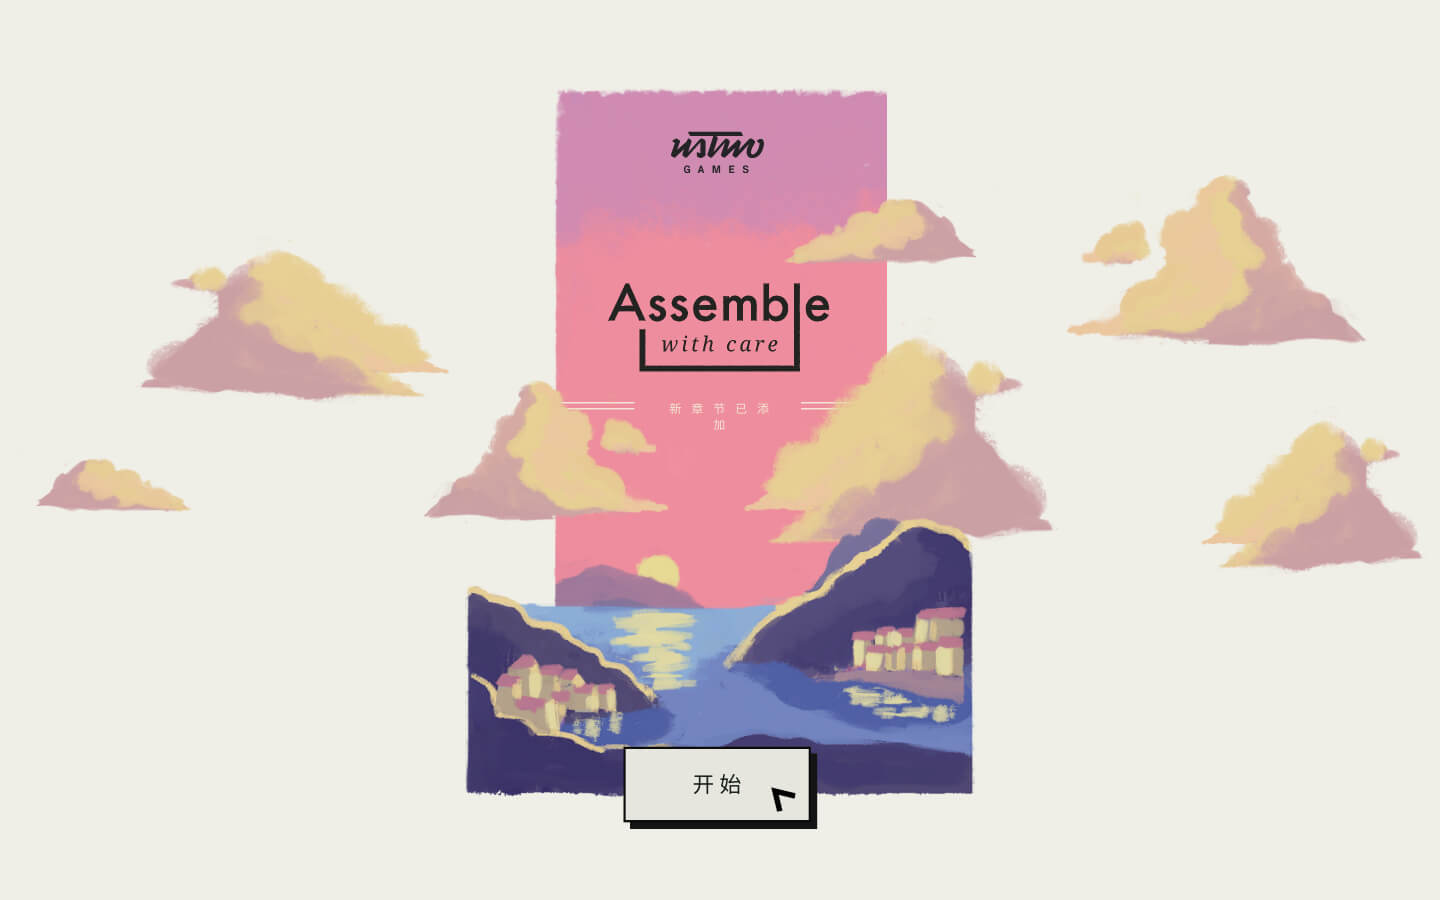 用心组装 for Mac v1.3.41 Assemble with Care 中文原生版